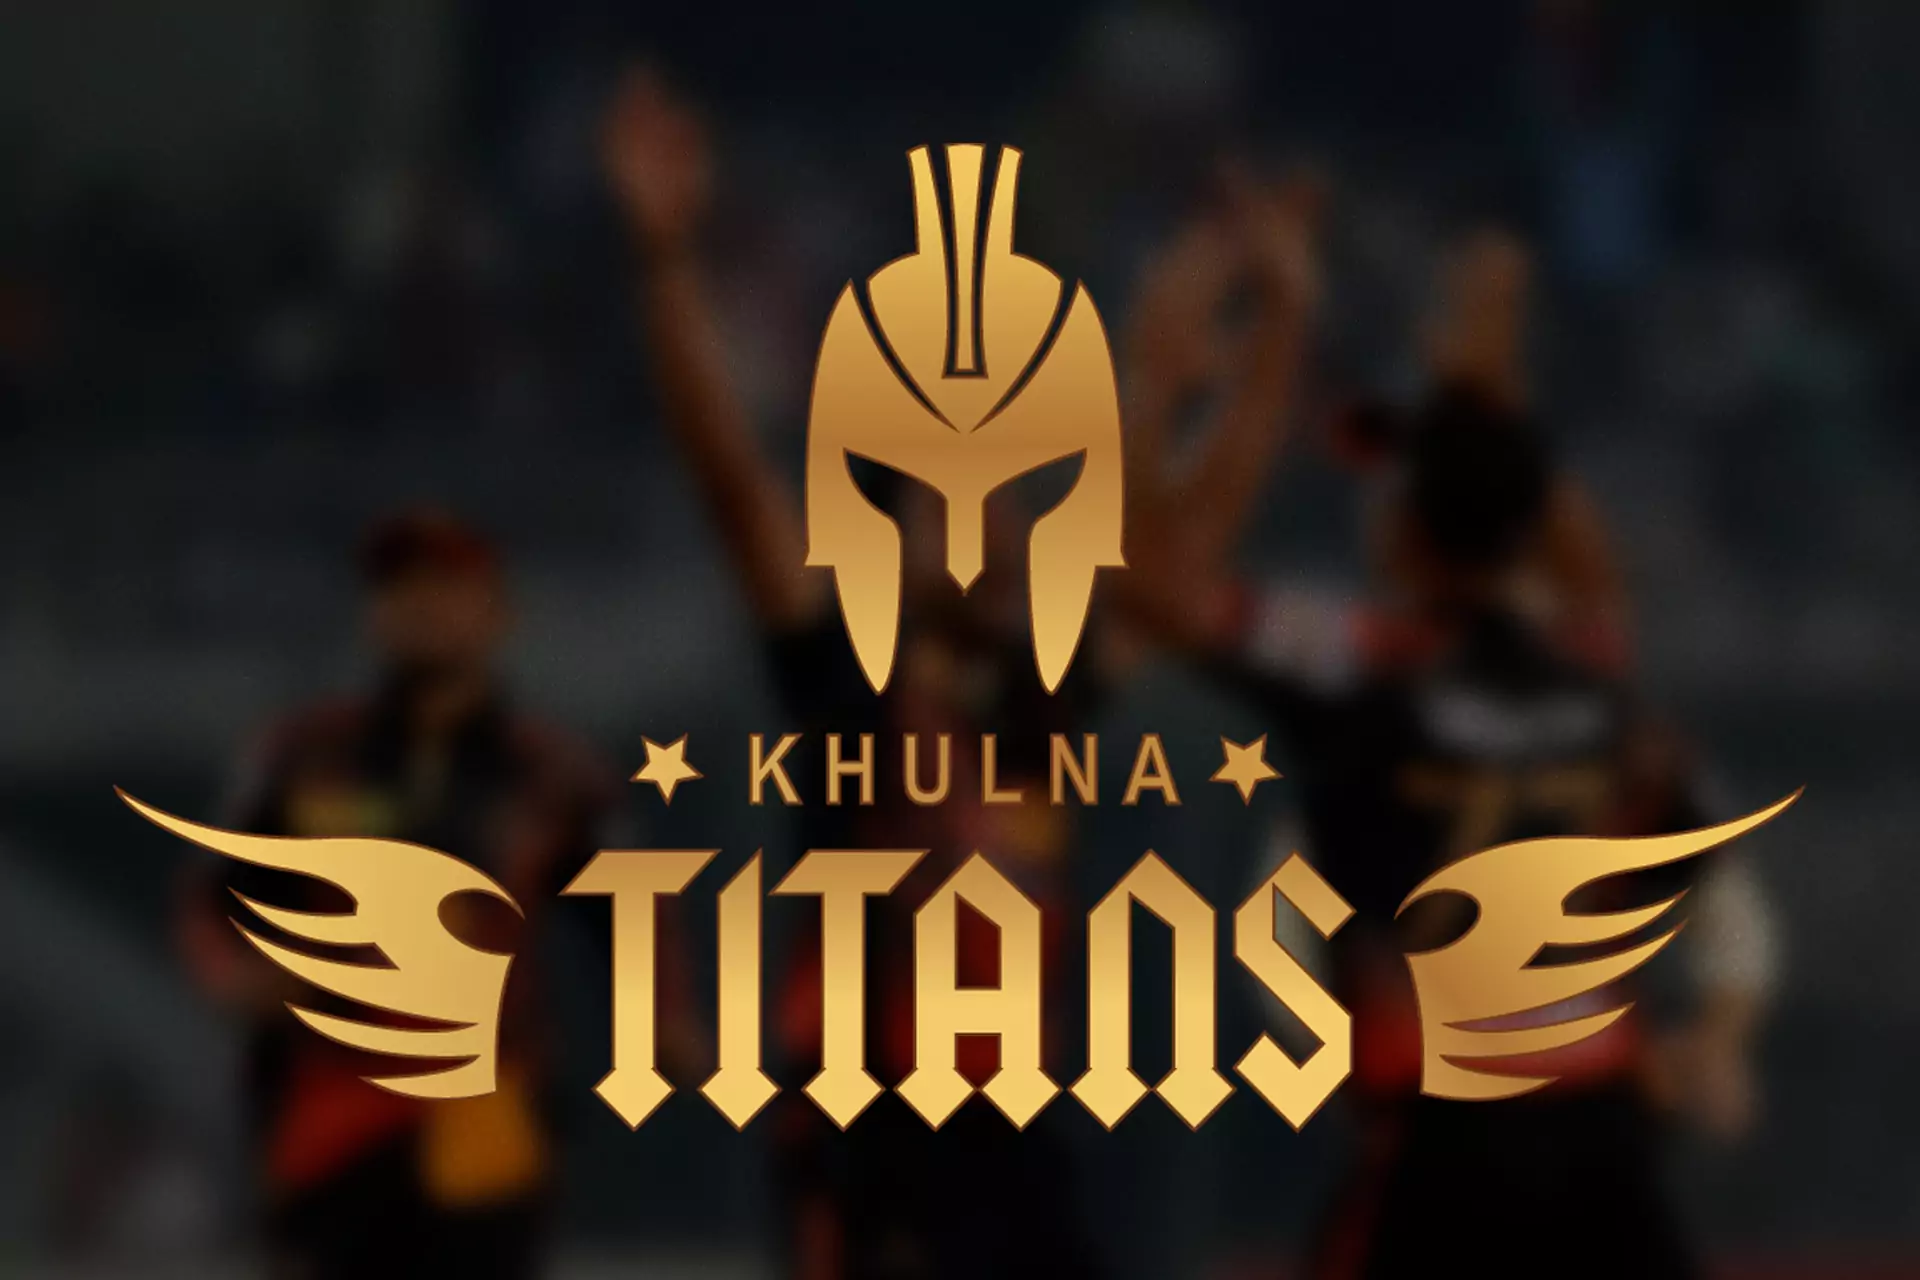 The Khulna Titans team represents Khulna Division in the BPL tournament.